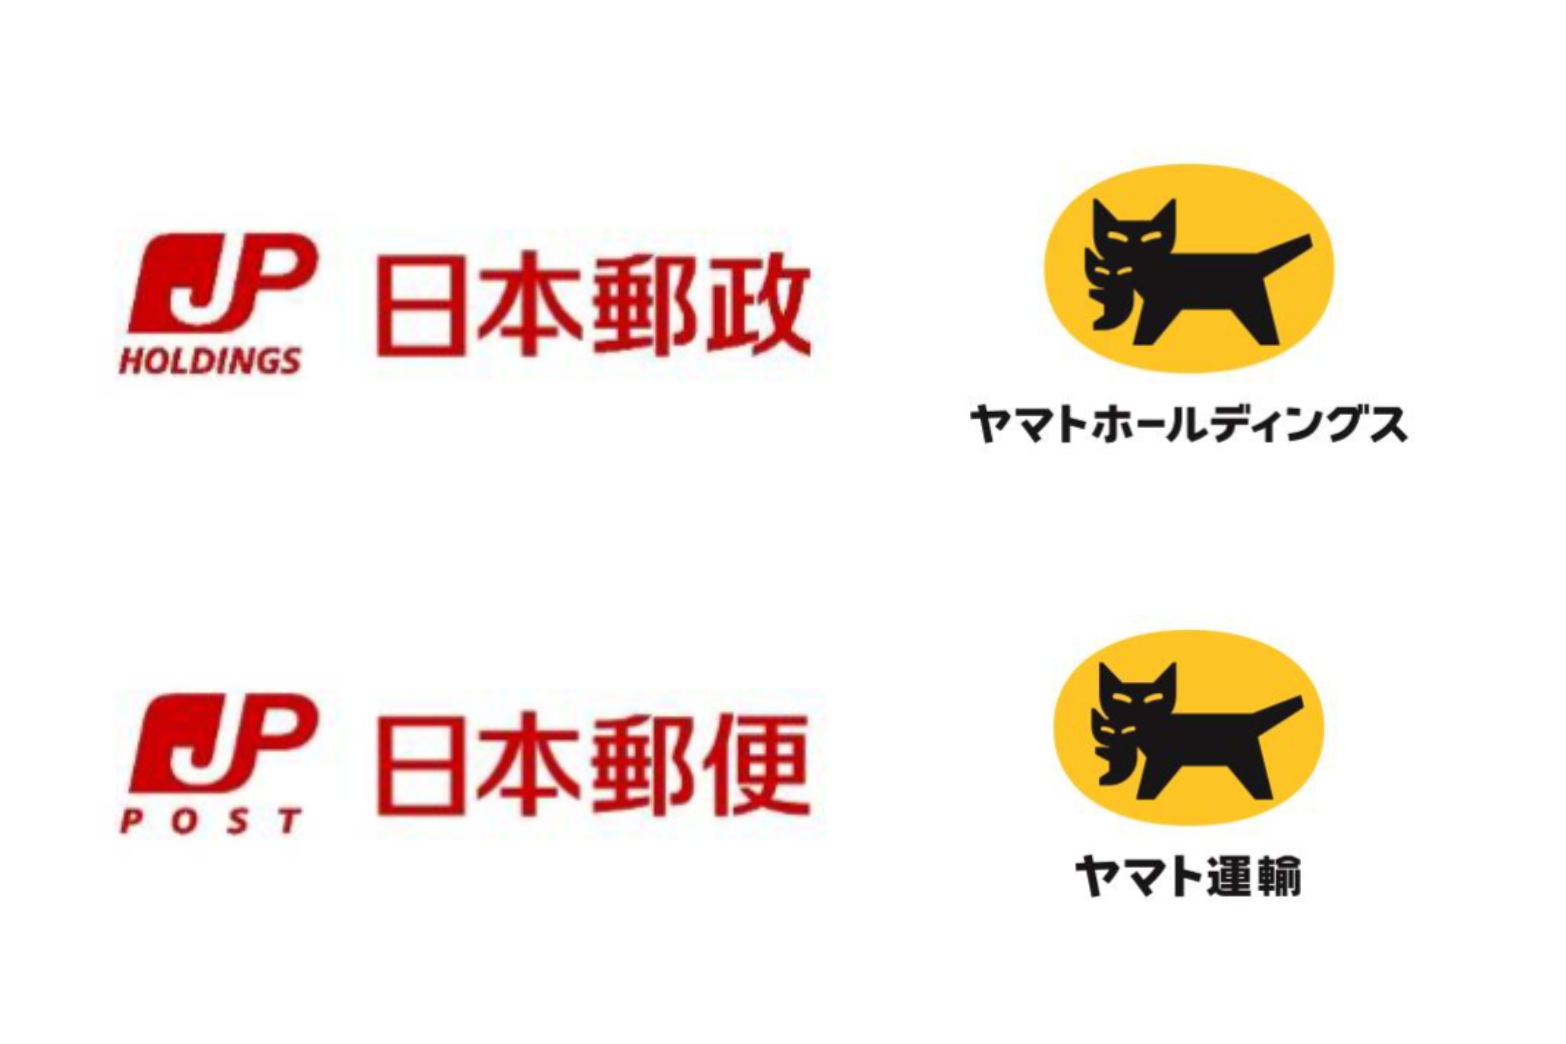 日本郵政とヤマトが提携、日本郵政委託の新サービス「クロネコゆう